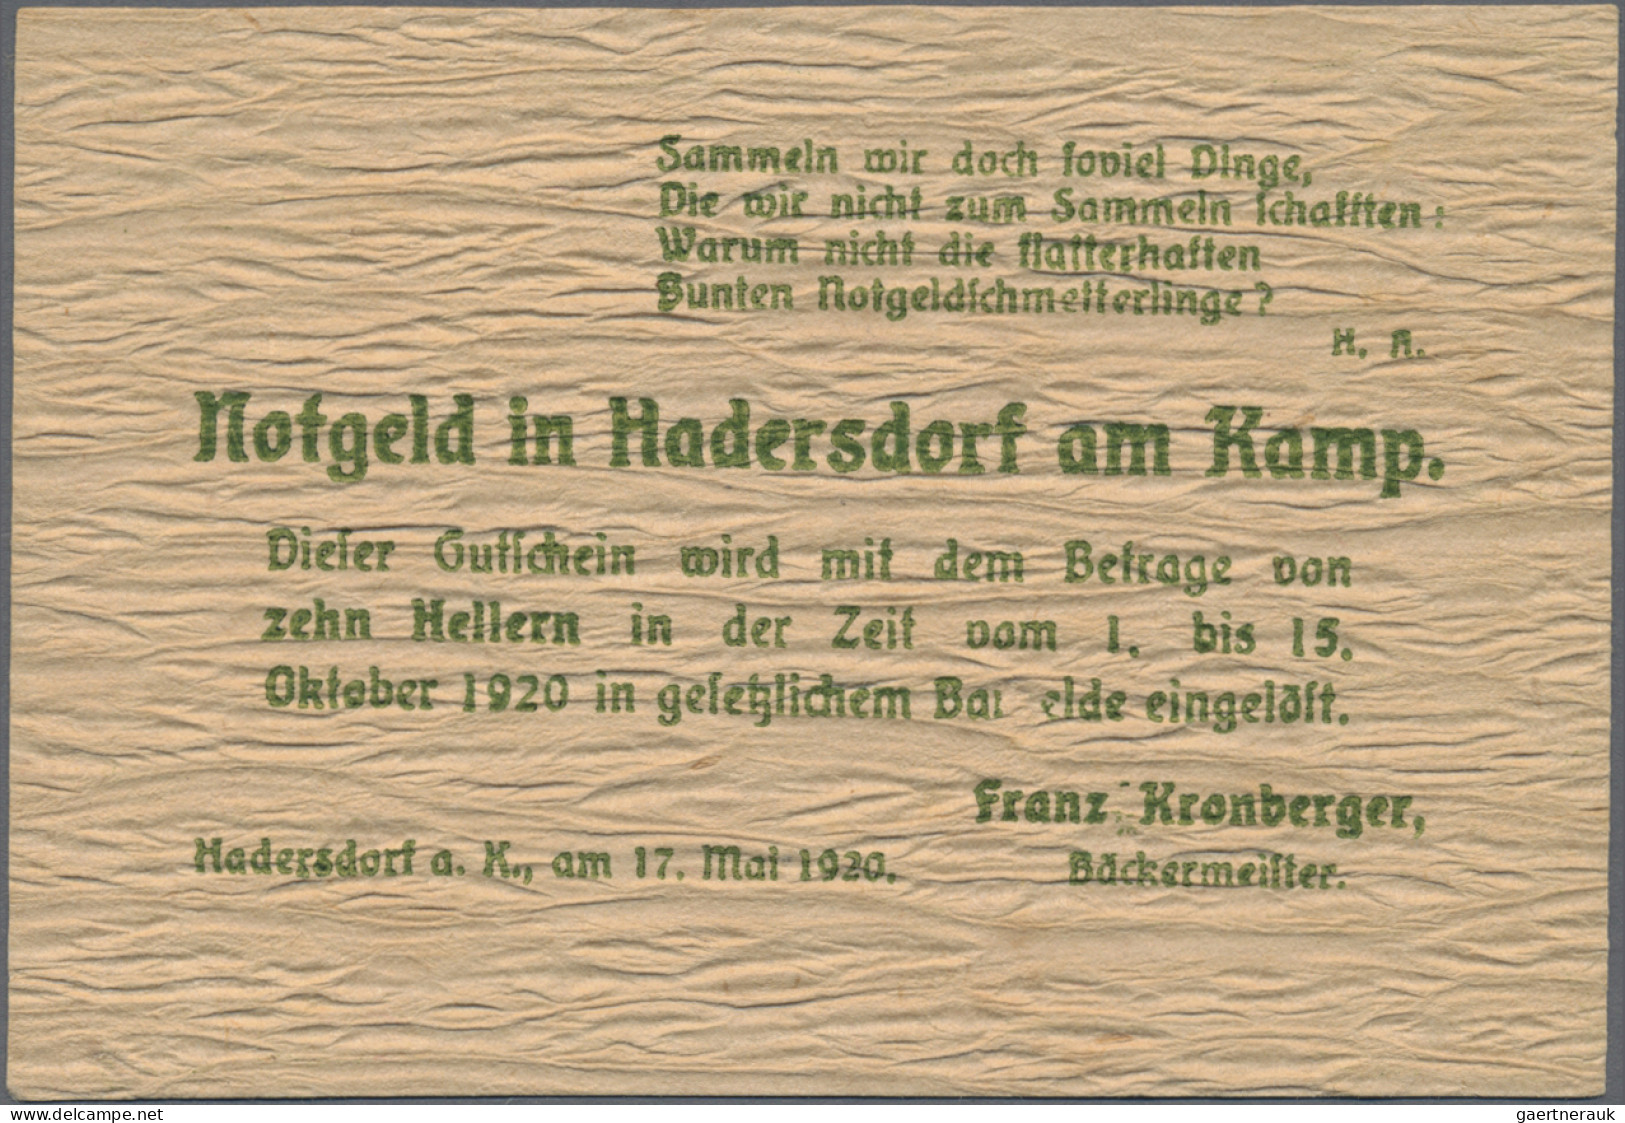 Austria: Hadersdorf Am Kamp, Franz Kronberger, 10, 20, 50 H., 17.5.1920, 10 H. W - Oesterreich